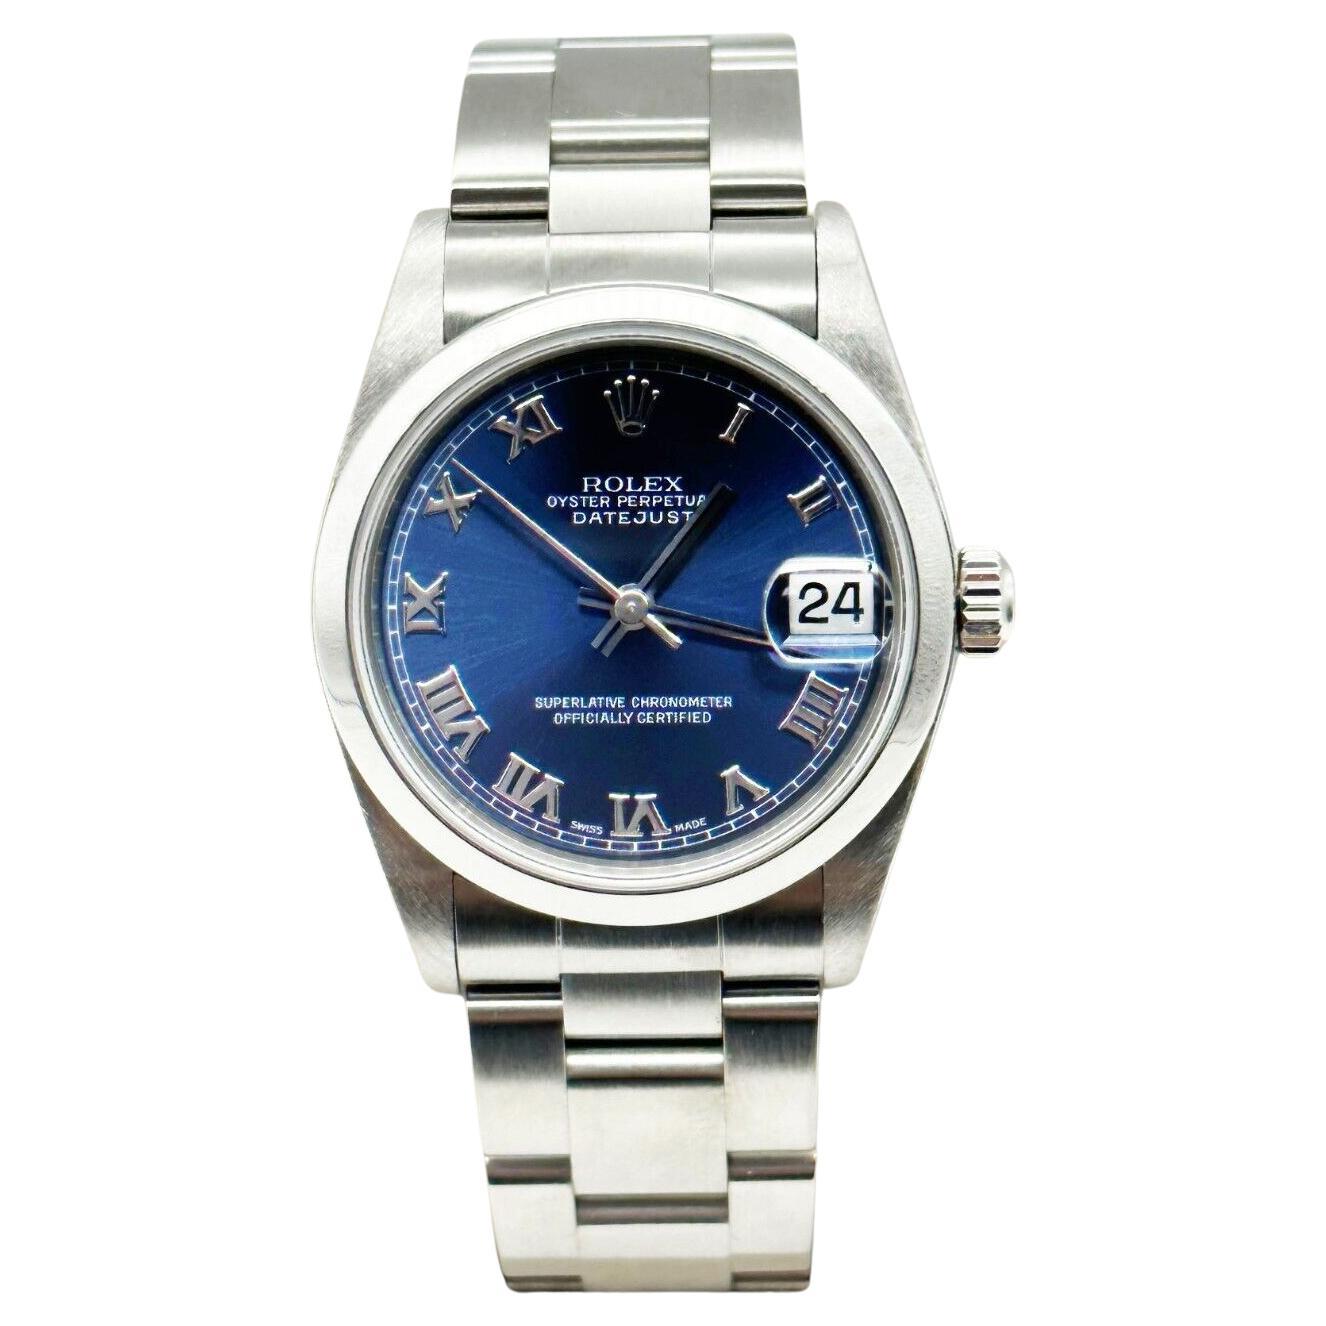 Rolex Montre Datejust 78240 avec cadran romain bleu de taille moyenne en acier inoxydable 31 mm